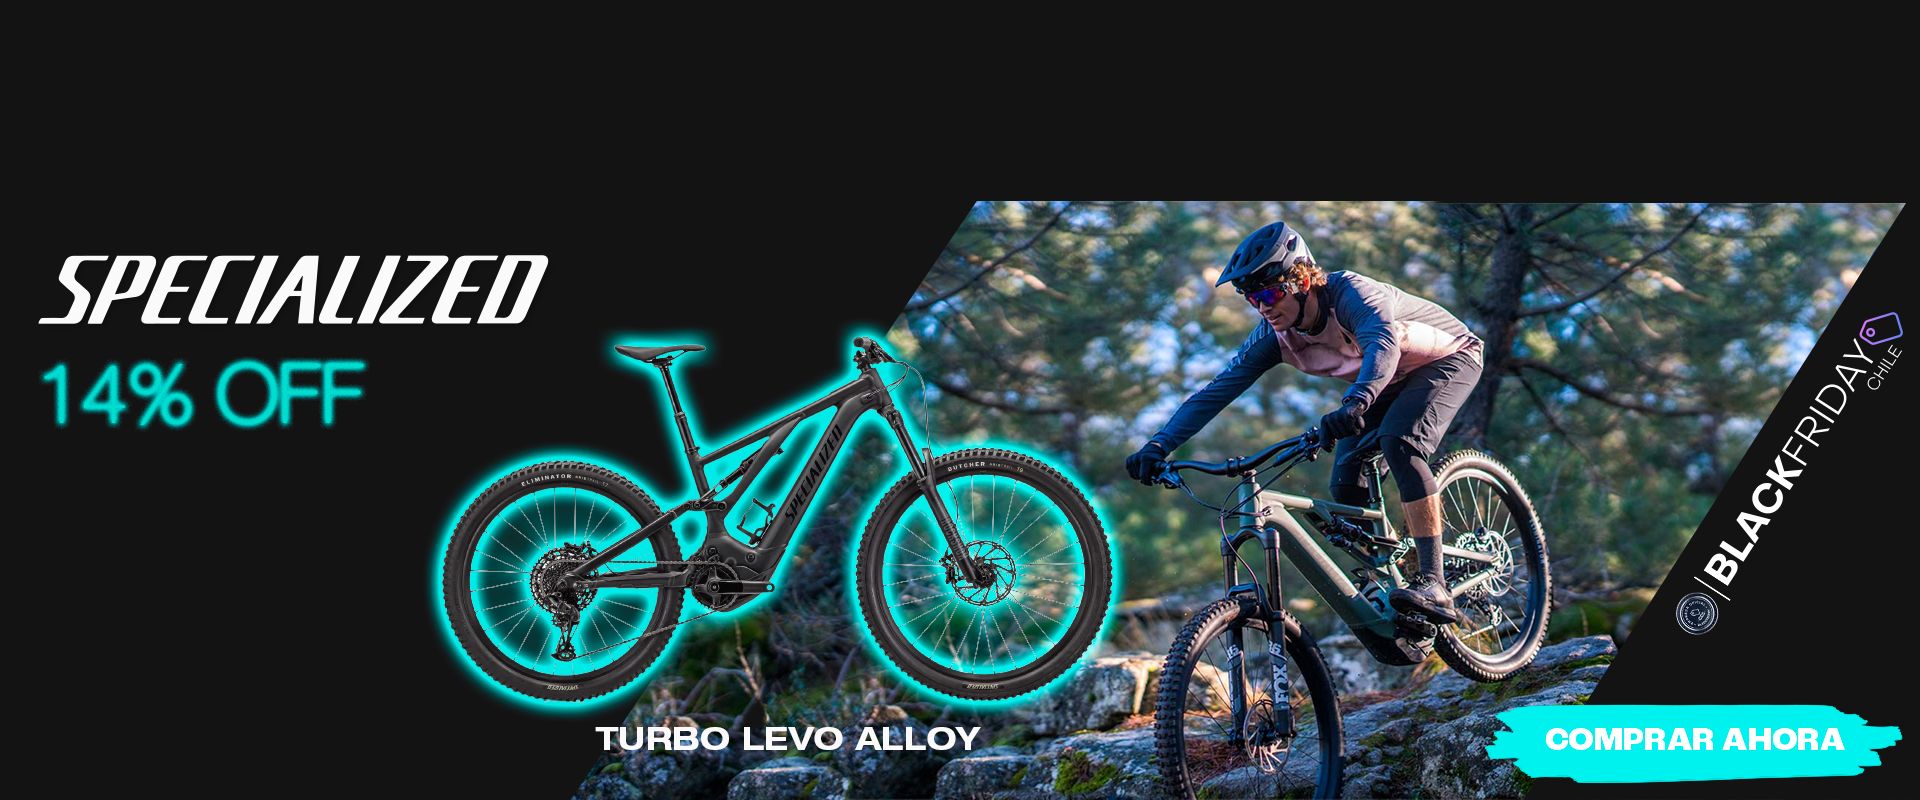 specialized-turbo-levo-alloy